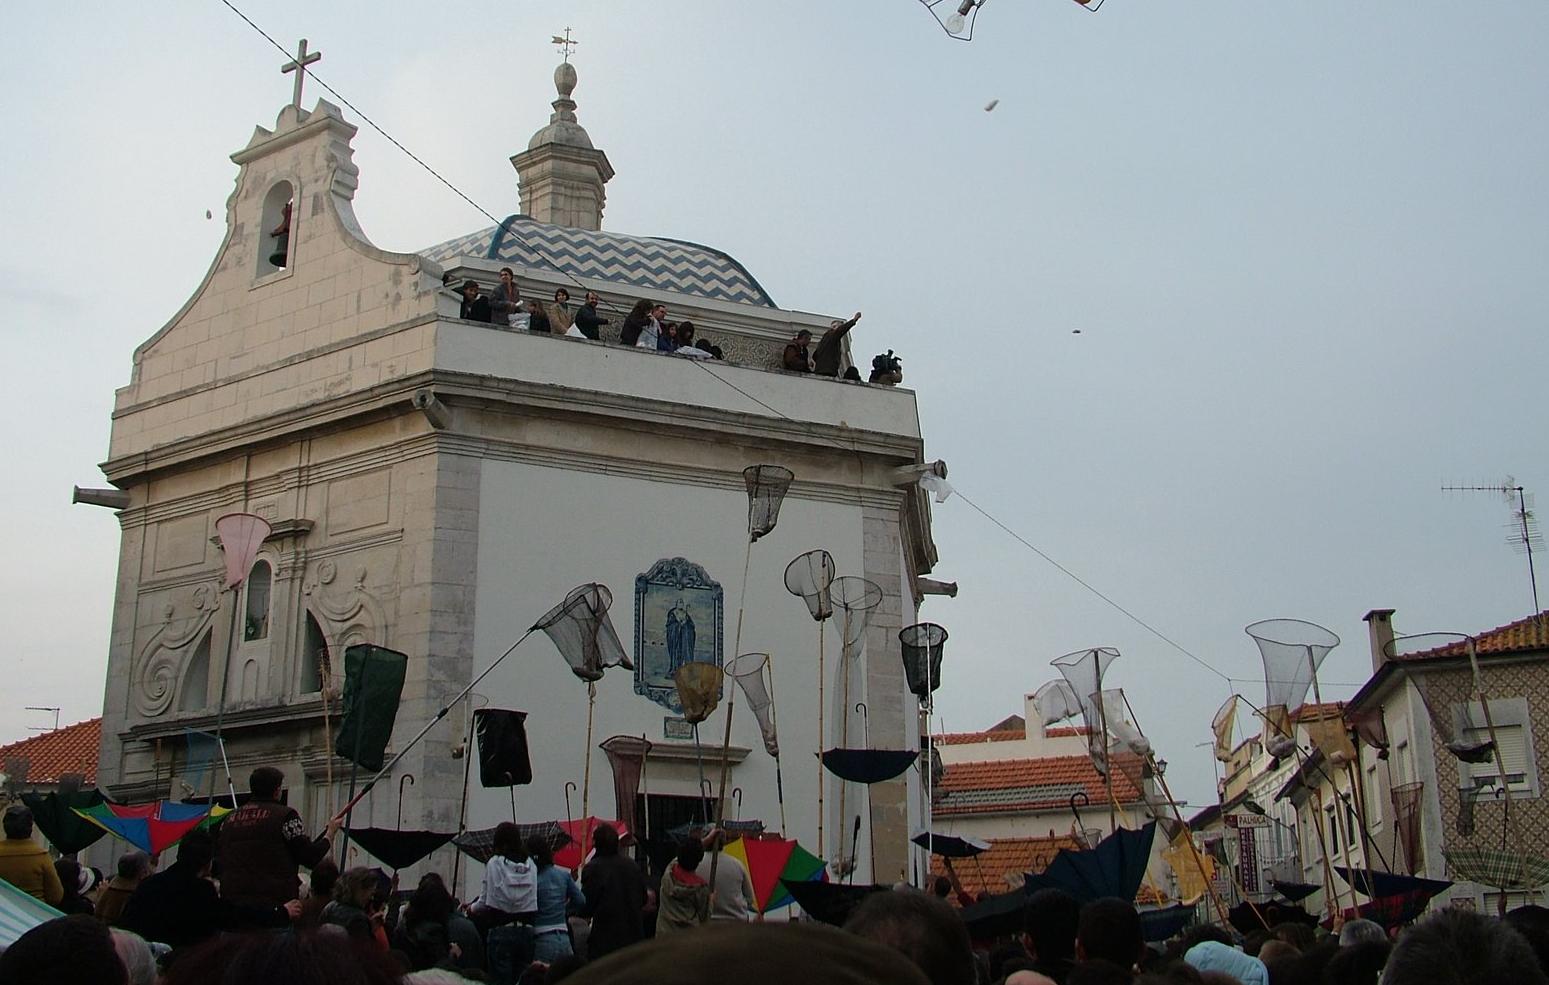 Festa de S. Gonalinho - Aveiro